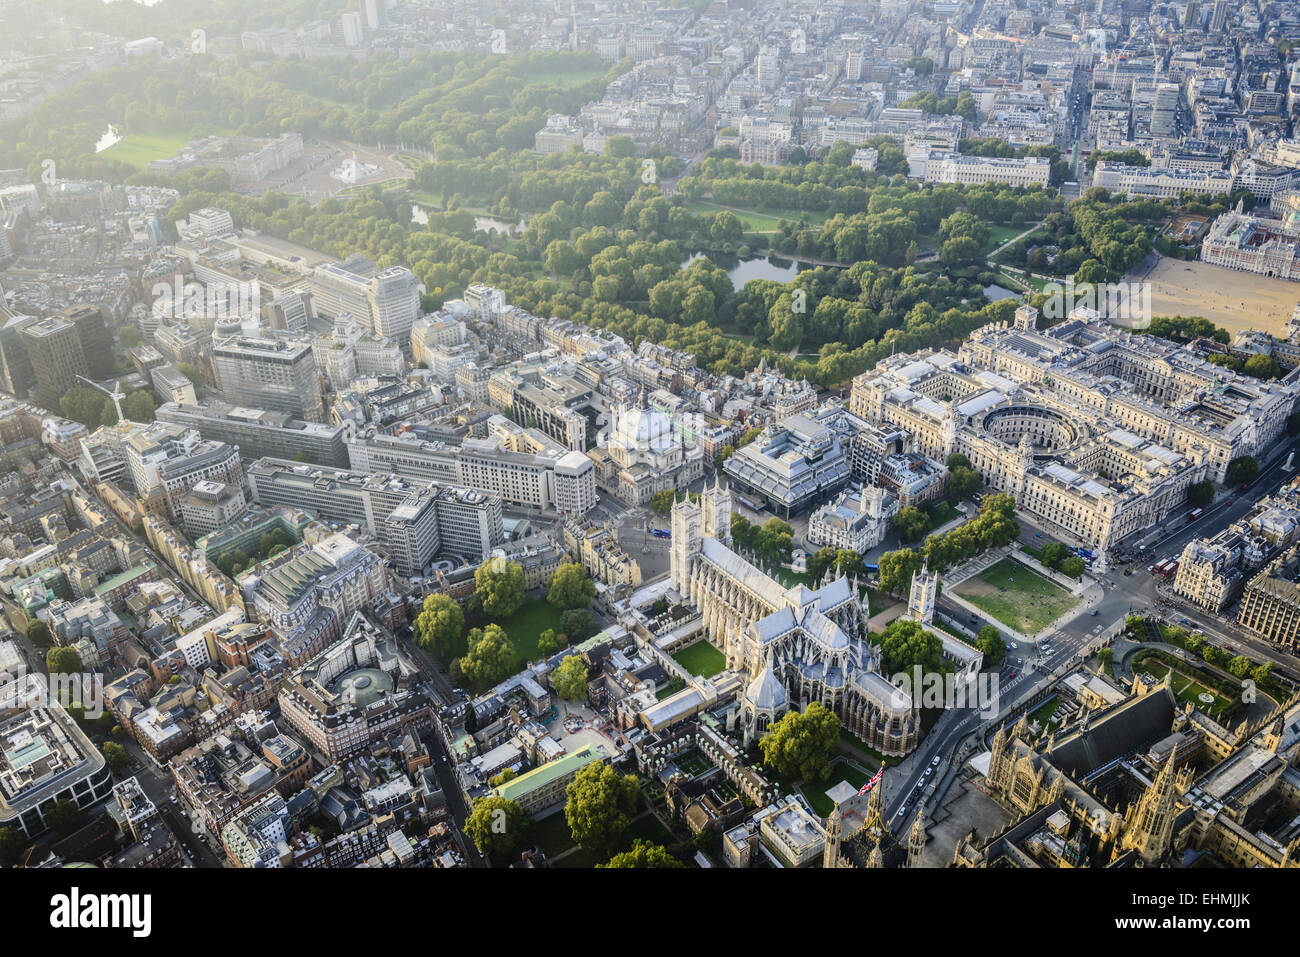 Vue aérienne de la ville de Londres, Angleterre Banque D'Images